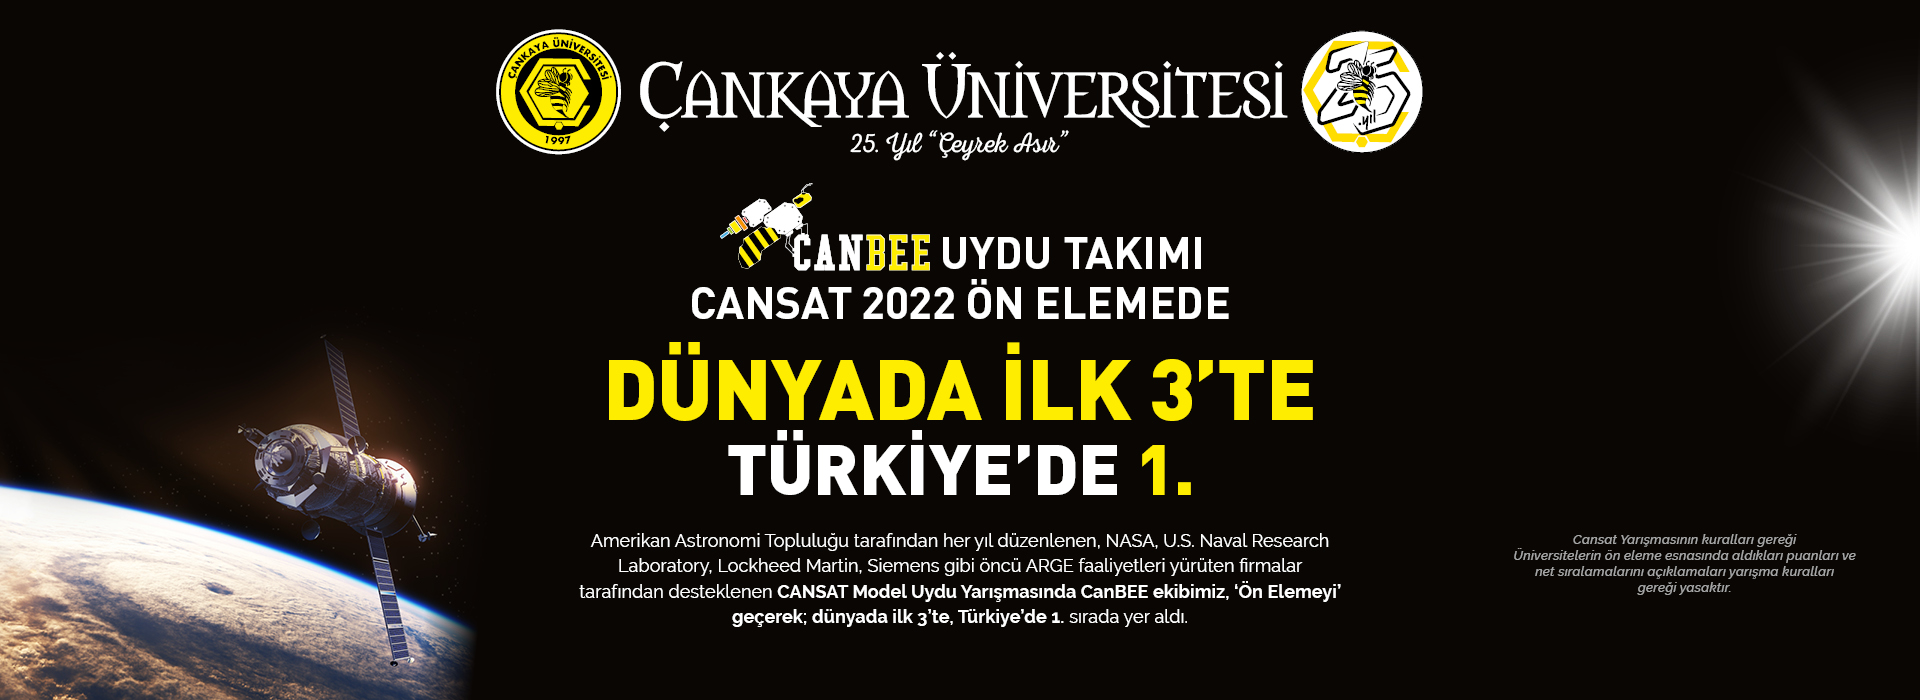 Canbee Uydu Takımı Dünyada ilk 3'te Türkiye'de 1.